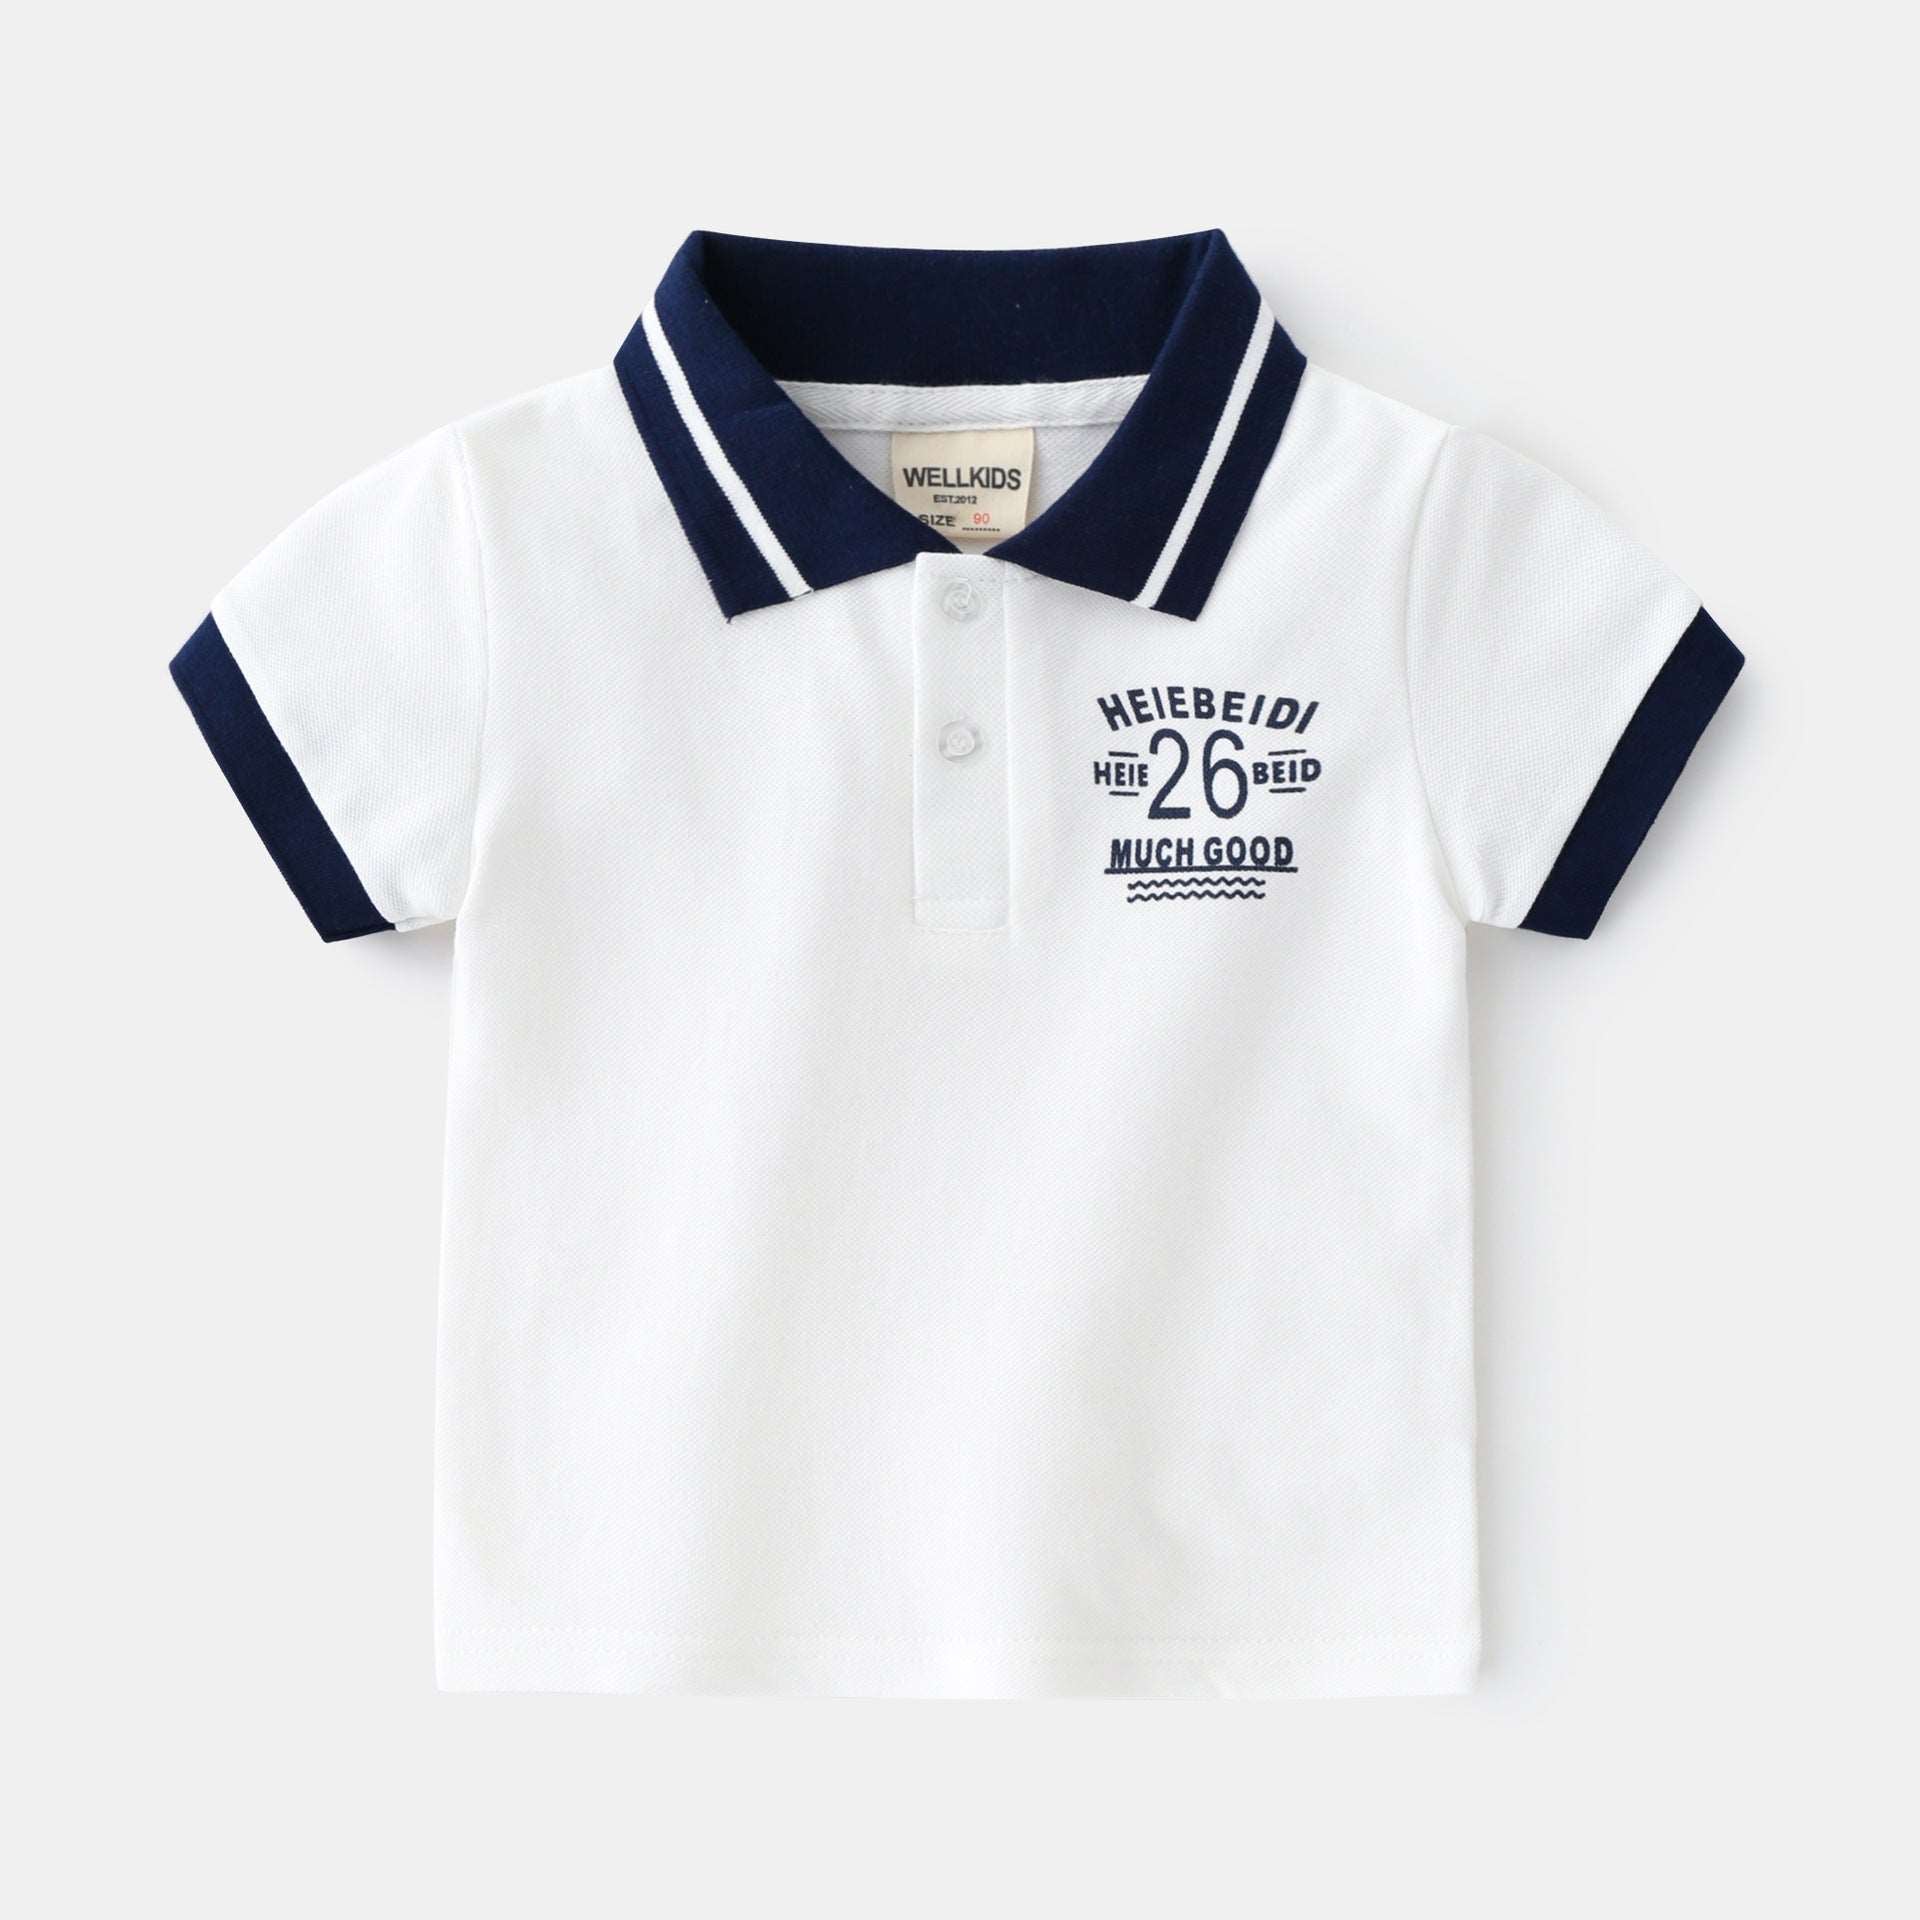 Boy's baby T-shirt short-sleeved summer kids children's top